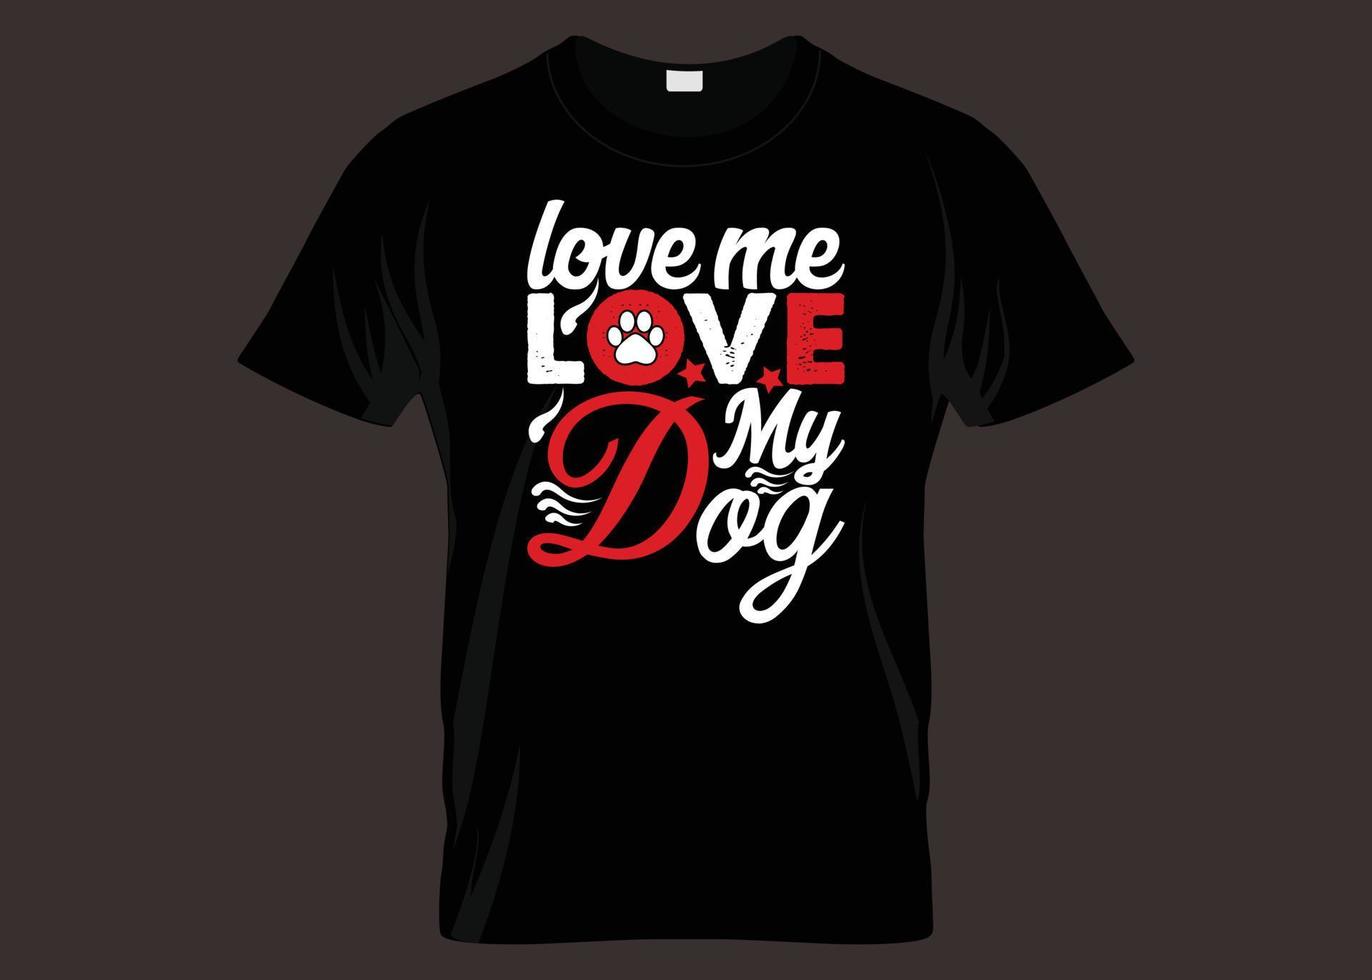 aime moi aime ma conception de t-shirt de typographie de chien vecteur